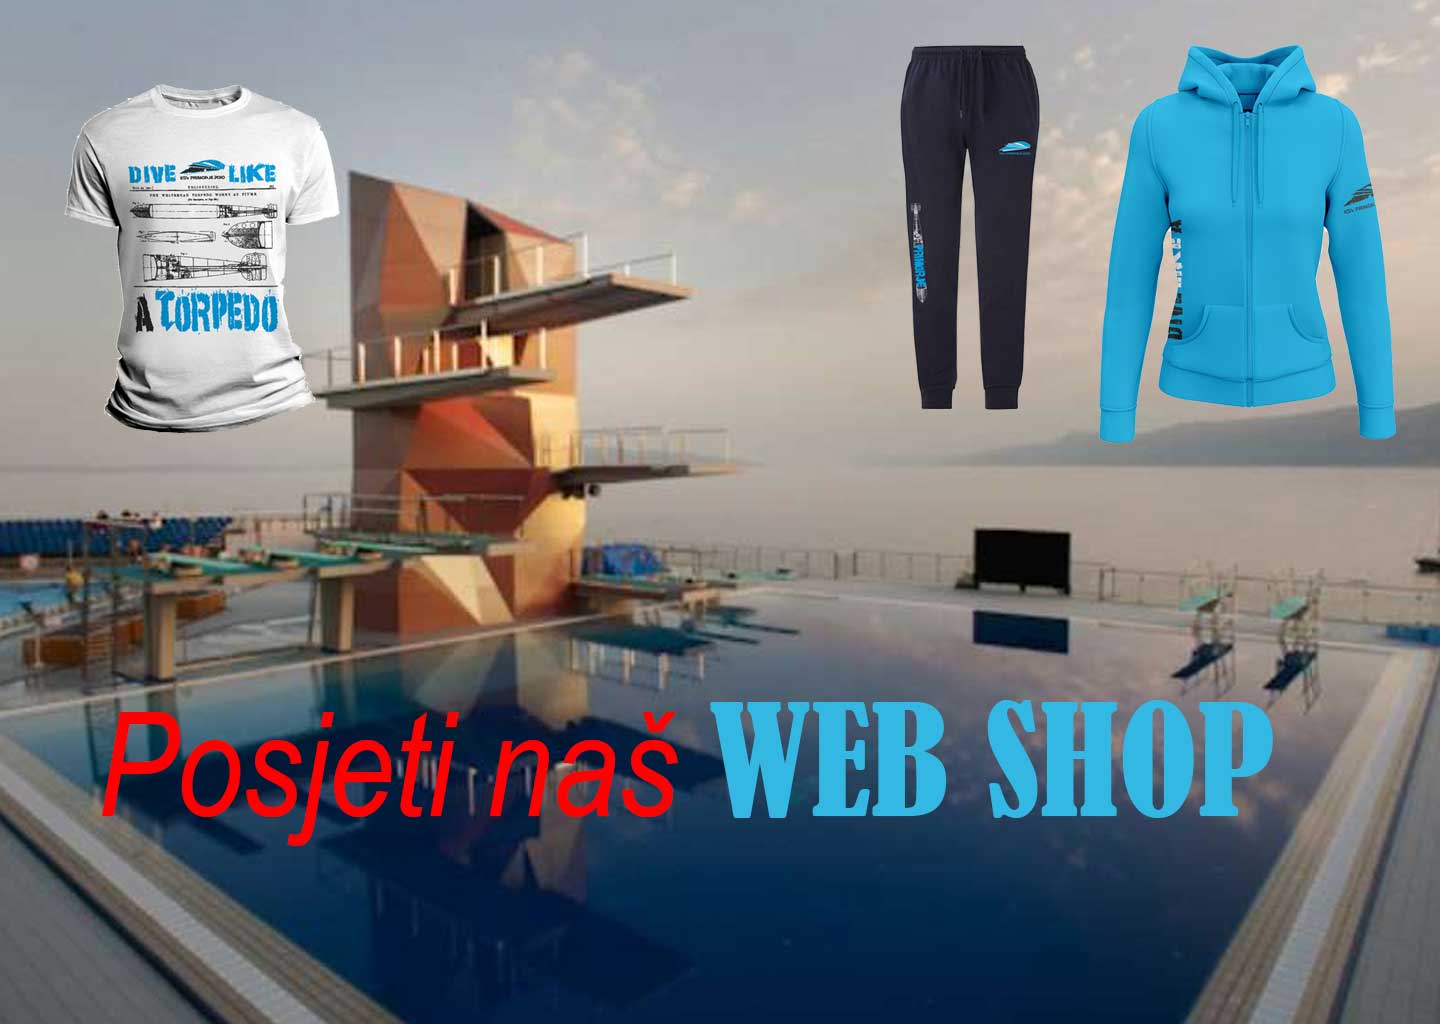 Web shop ksv